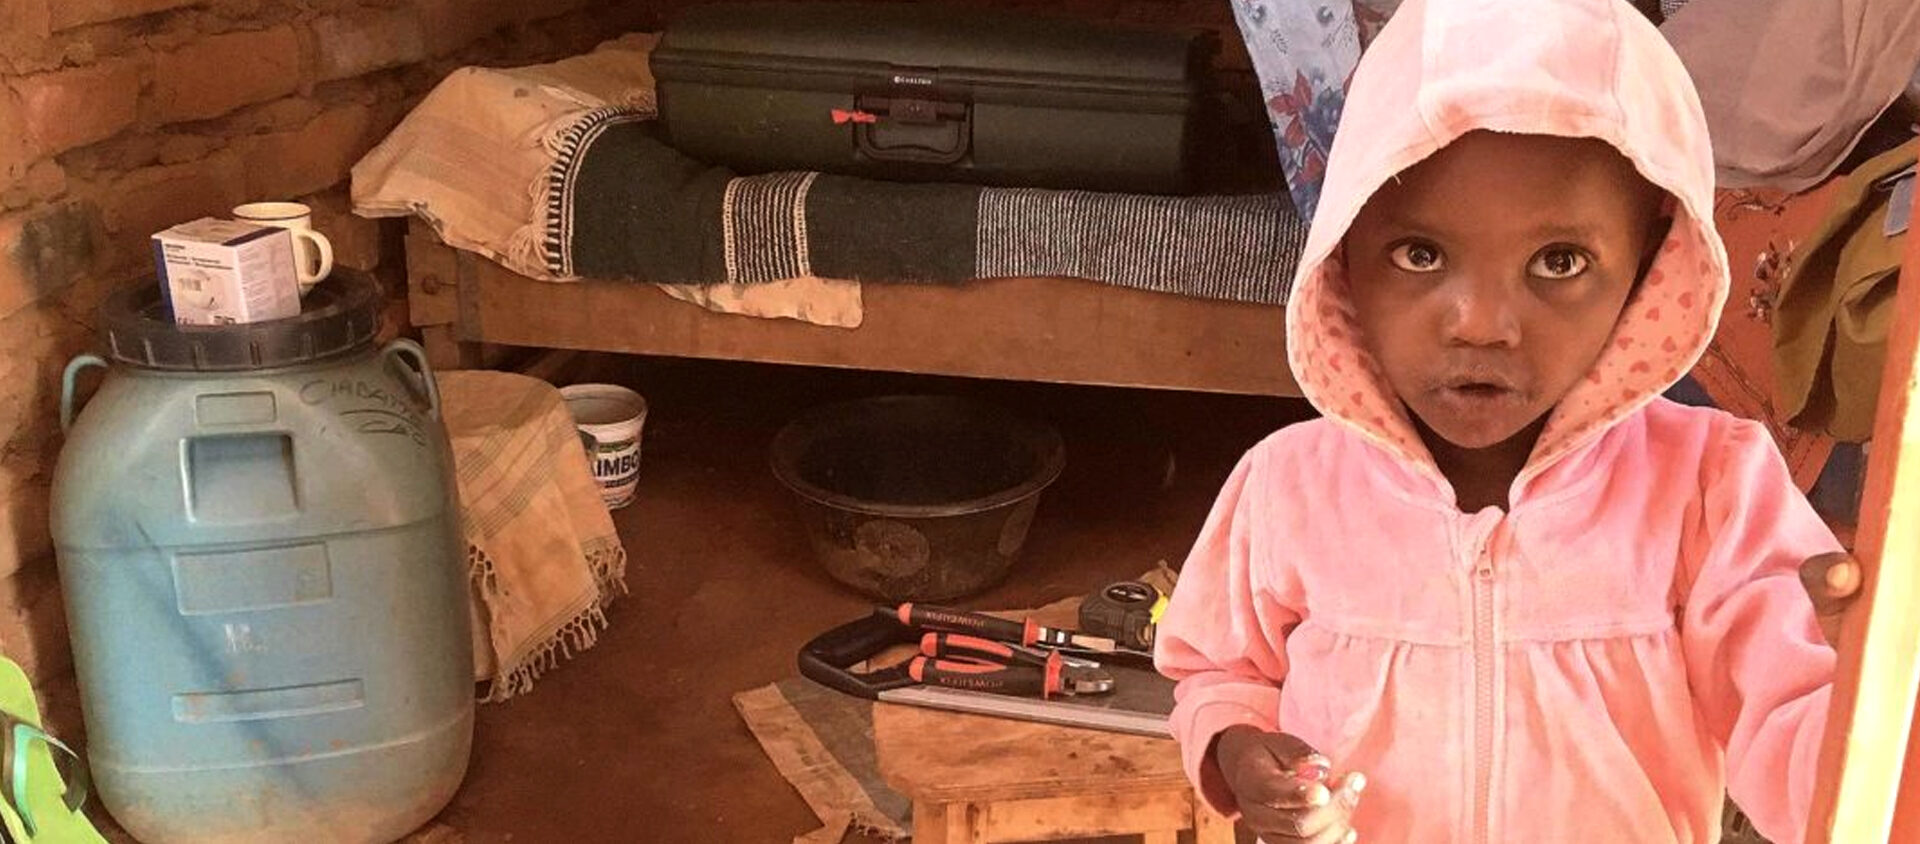 Mercy är 6 år och bor i Kenya